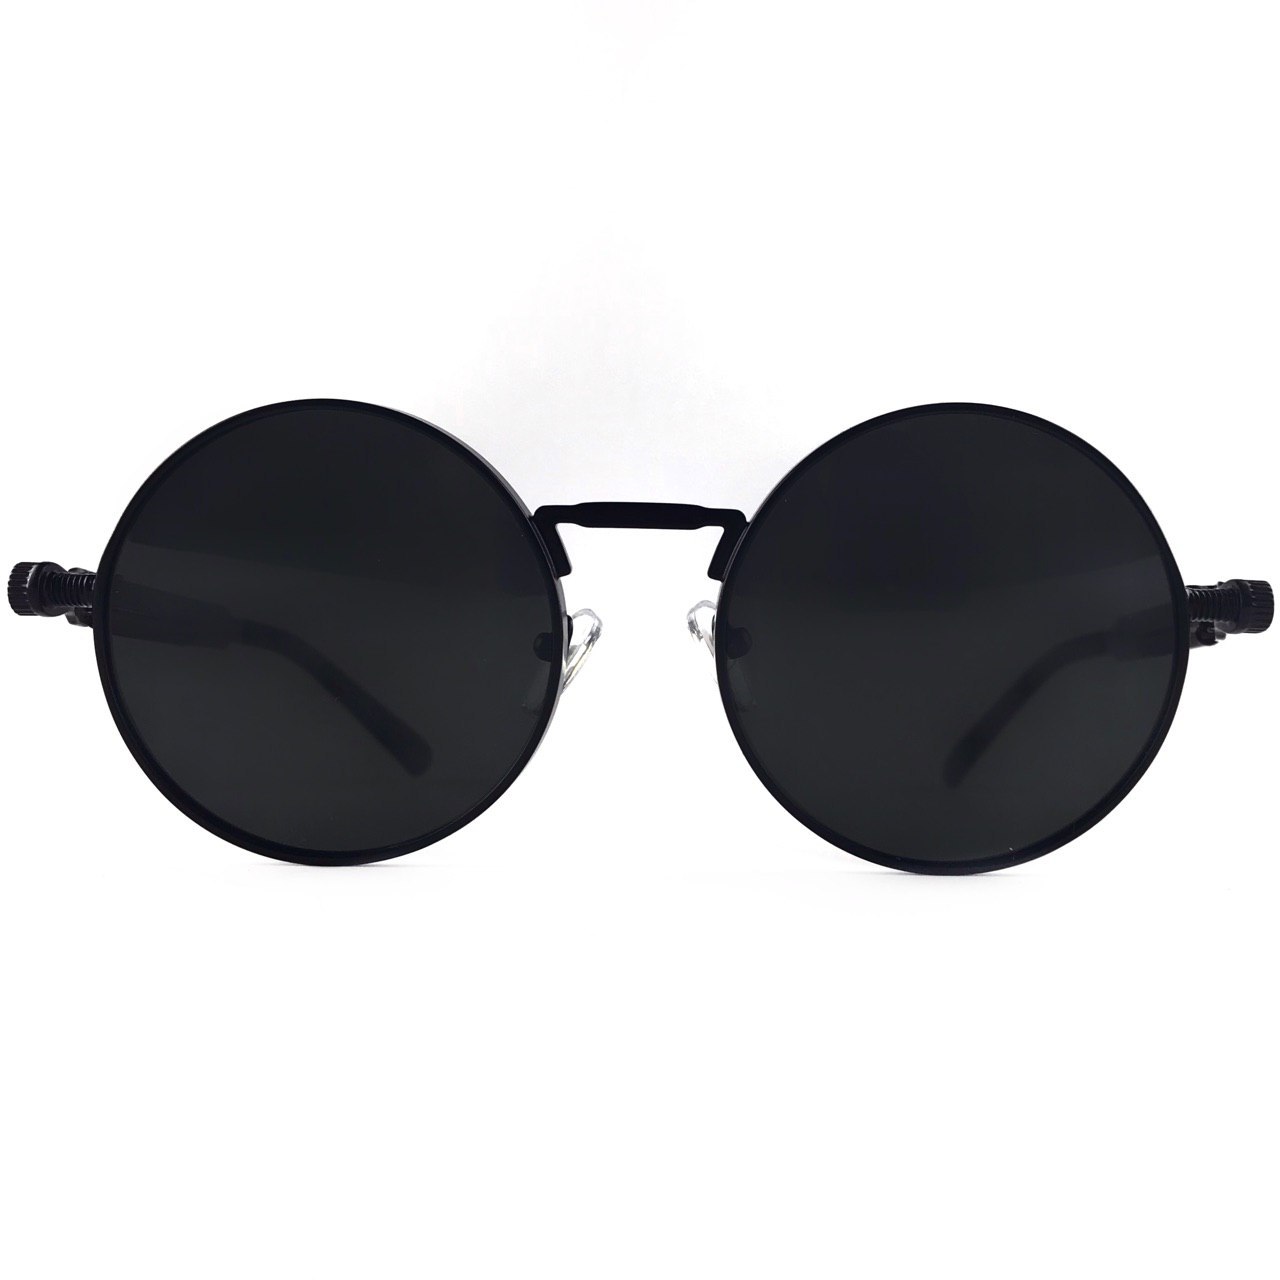 Какие солнцезащитные очки в моде в году с фото - Интернет магазин солнцезащитных очков